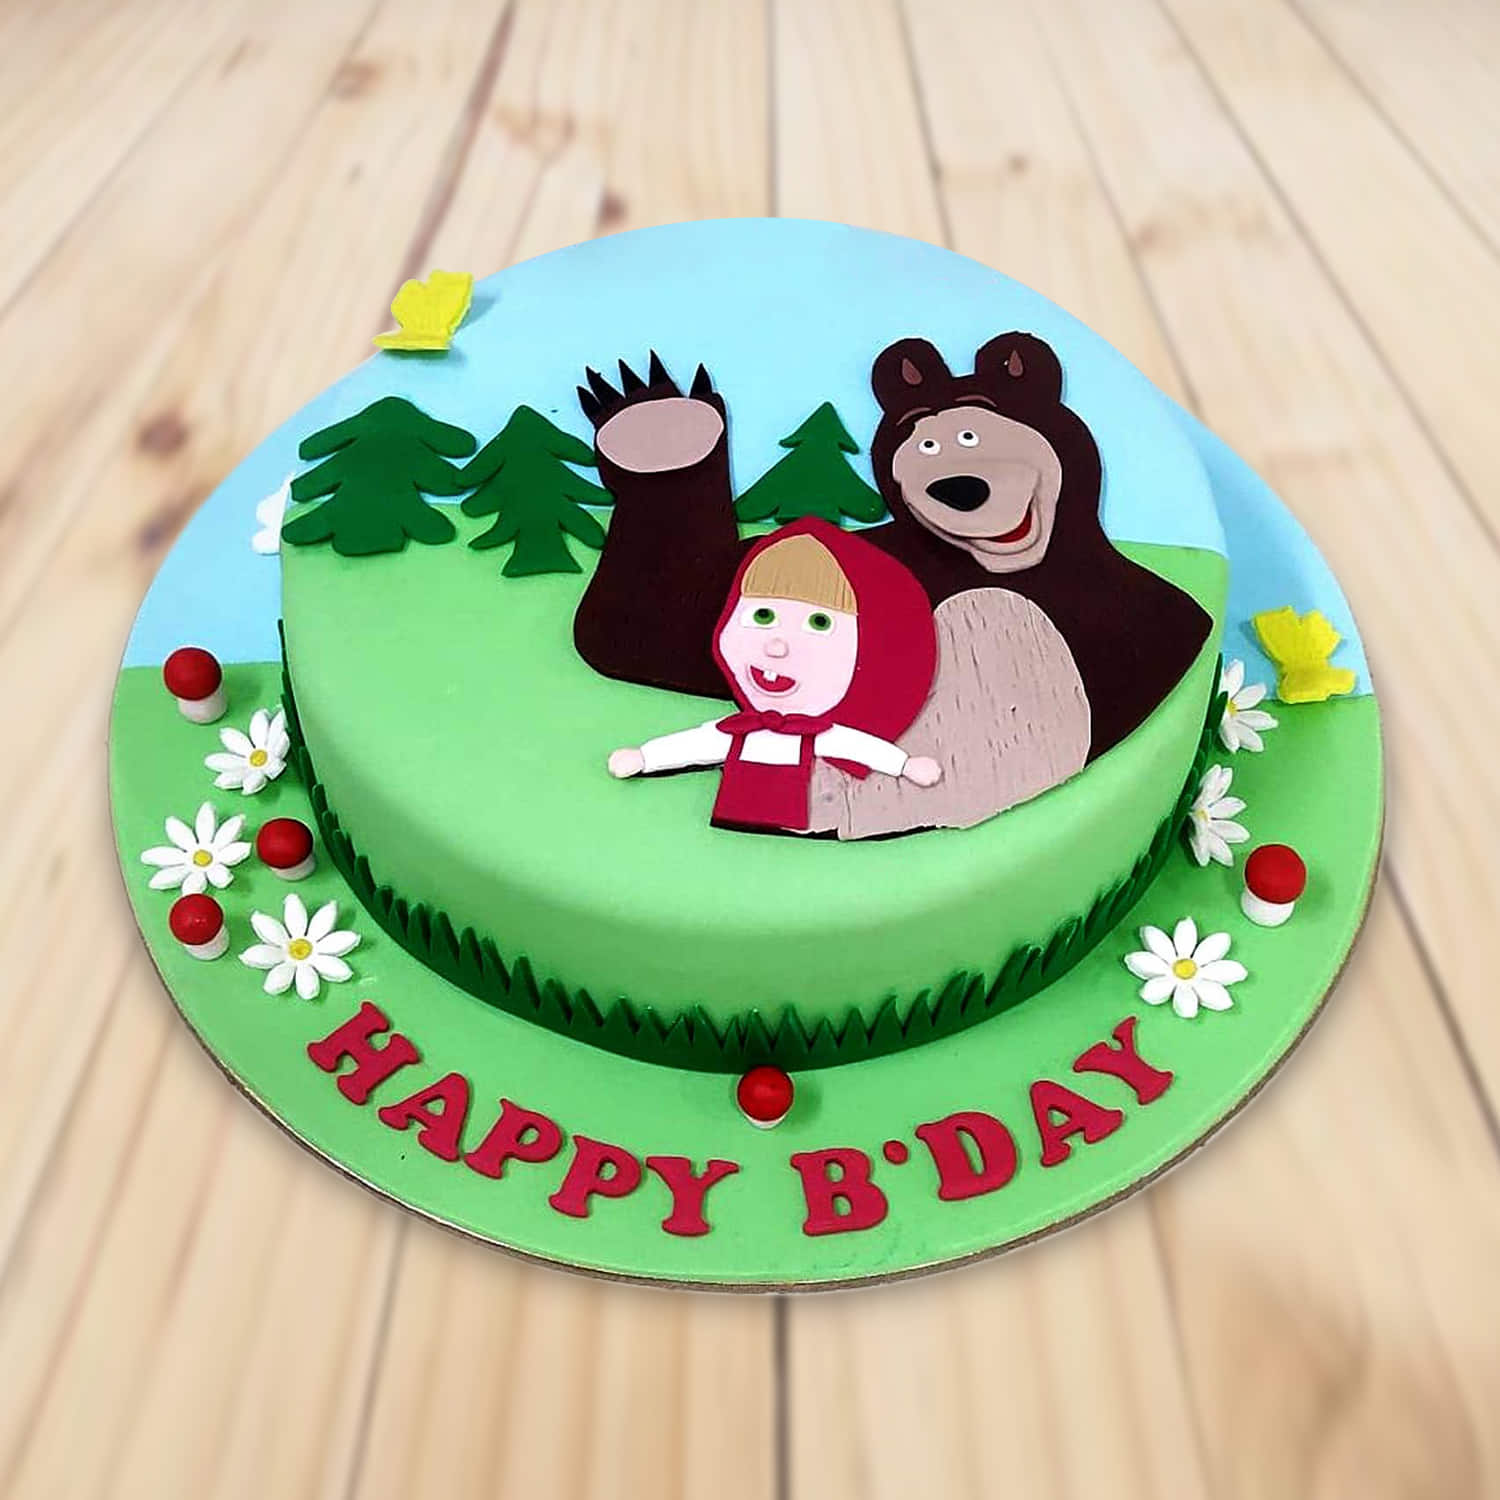 Masha and bear photo Cake Decorating Competition - YouTube